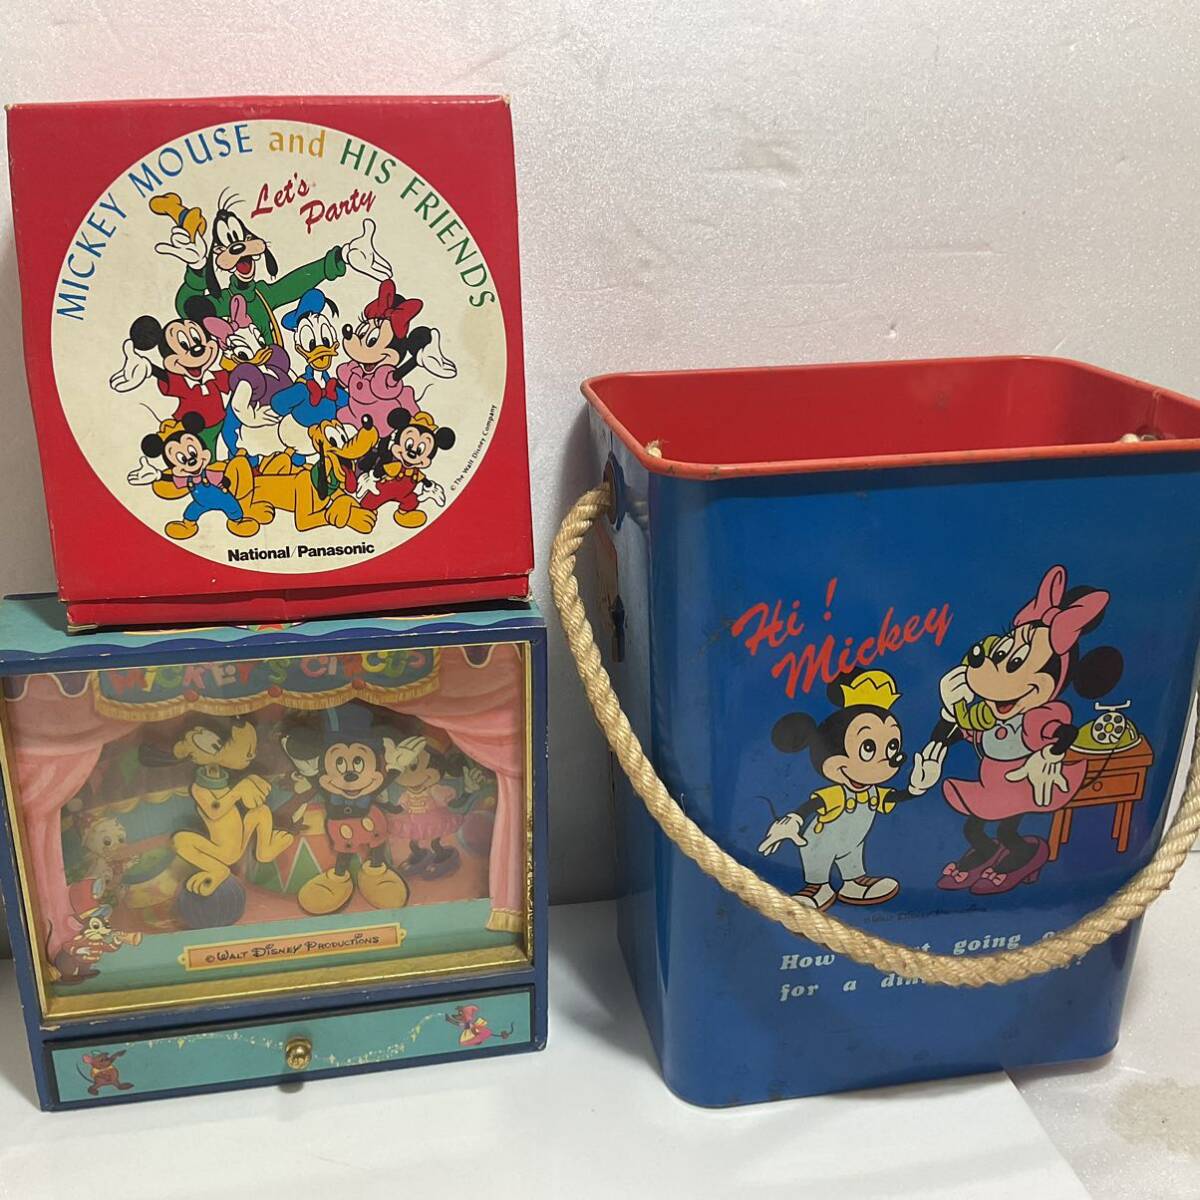  Disney товары много продажа комплектом подлинная вещь кукла мозаика тарелка брелок для ключа значок открытка Hsu алый a карта и т.п. Mickey Mouse 